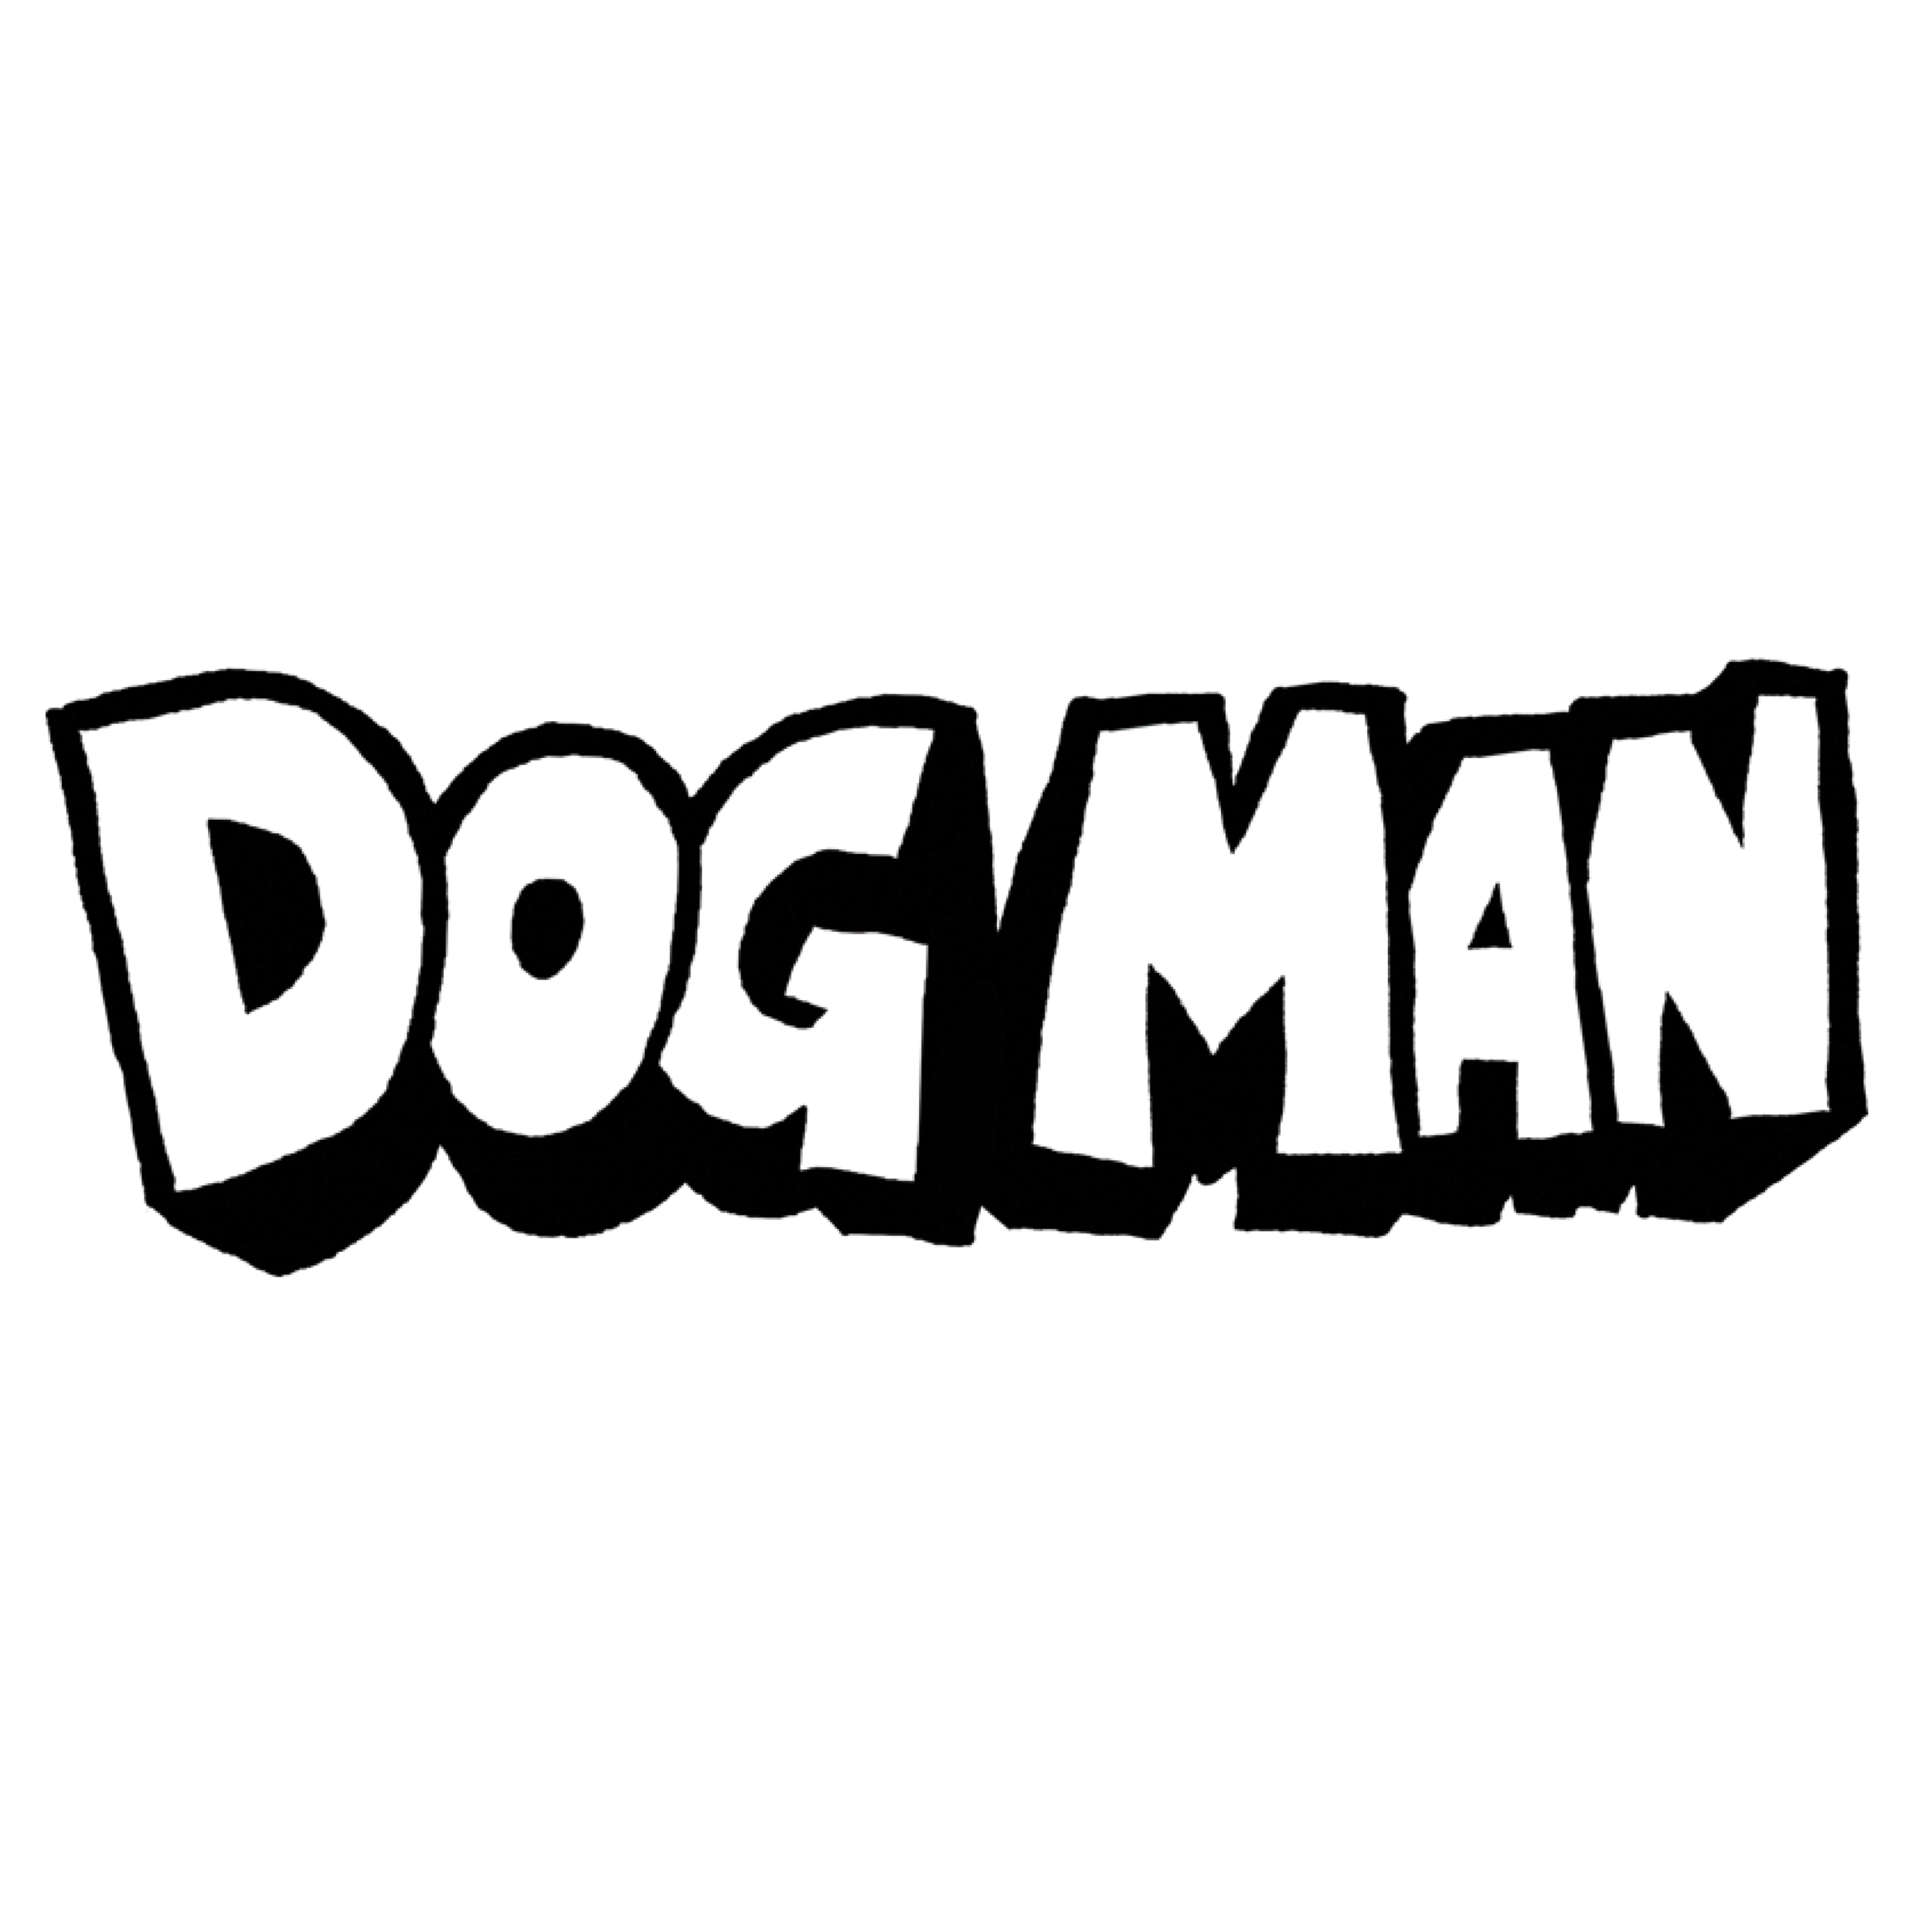 Dogman.png